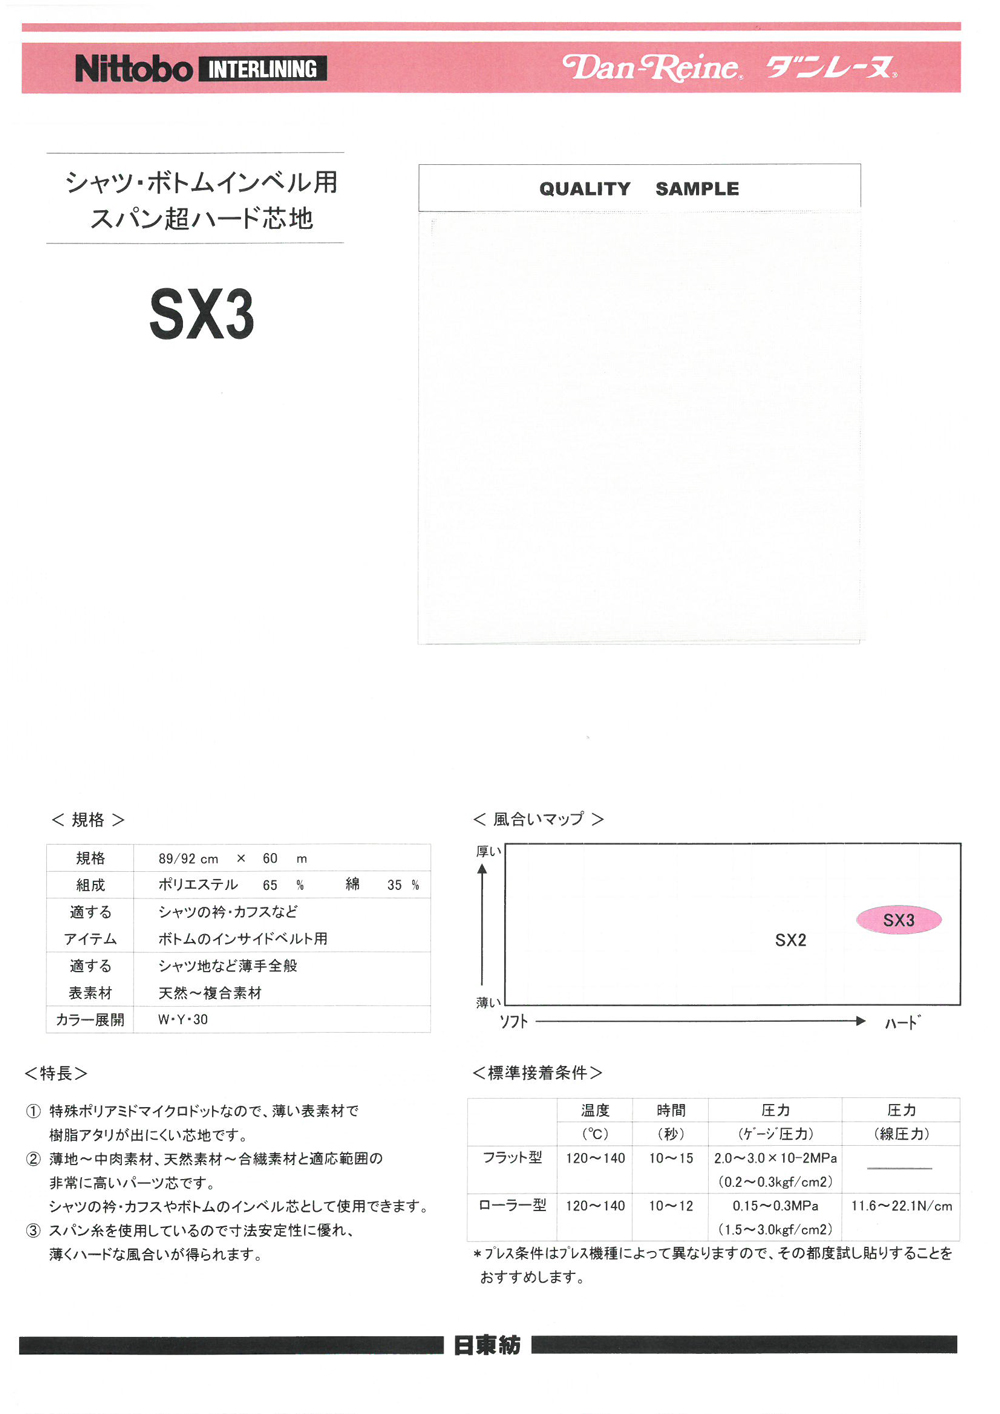 SX3 셔츠 · 바지 인사이드 벨트 스팬 슈퍼 하드 심지 닛토보 (닛토보인터라이닝)